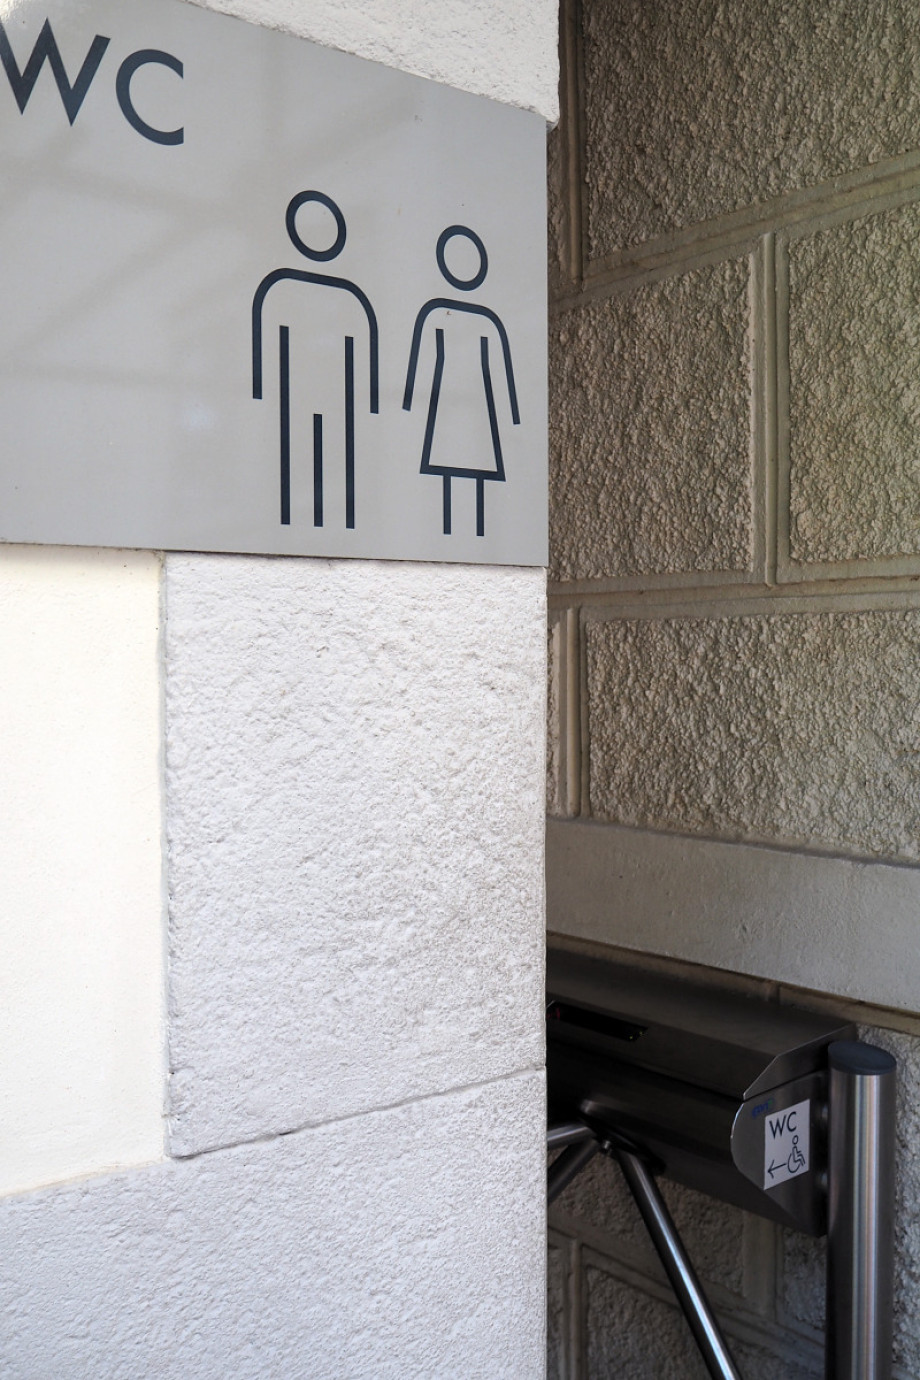 Общественный туалет у храма Святой Барборы. Изображение 1